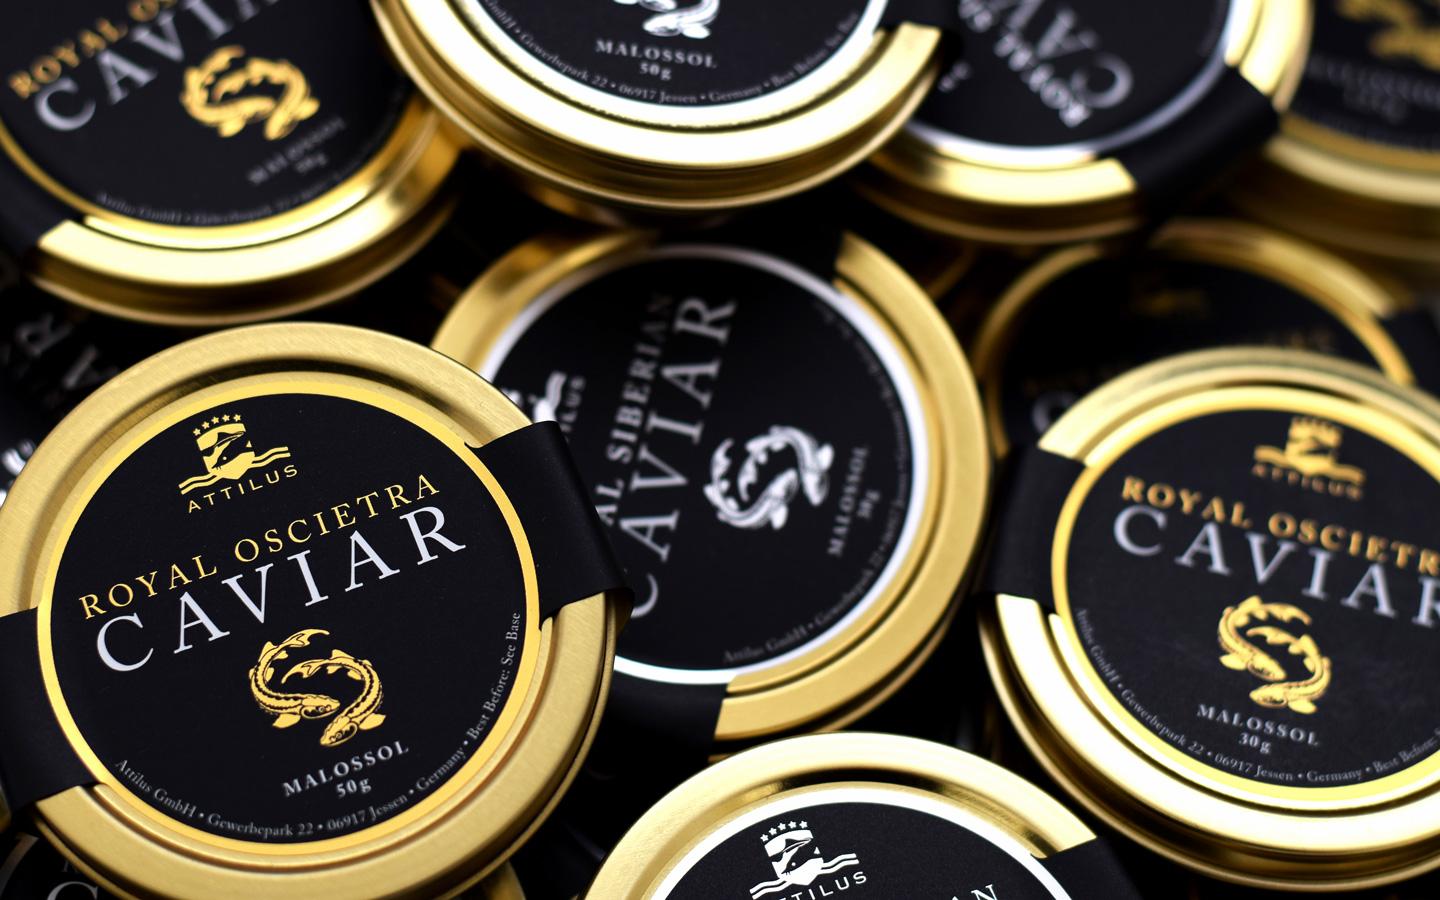 Attilus Caviar - Our Caviar Collection